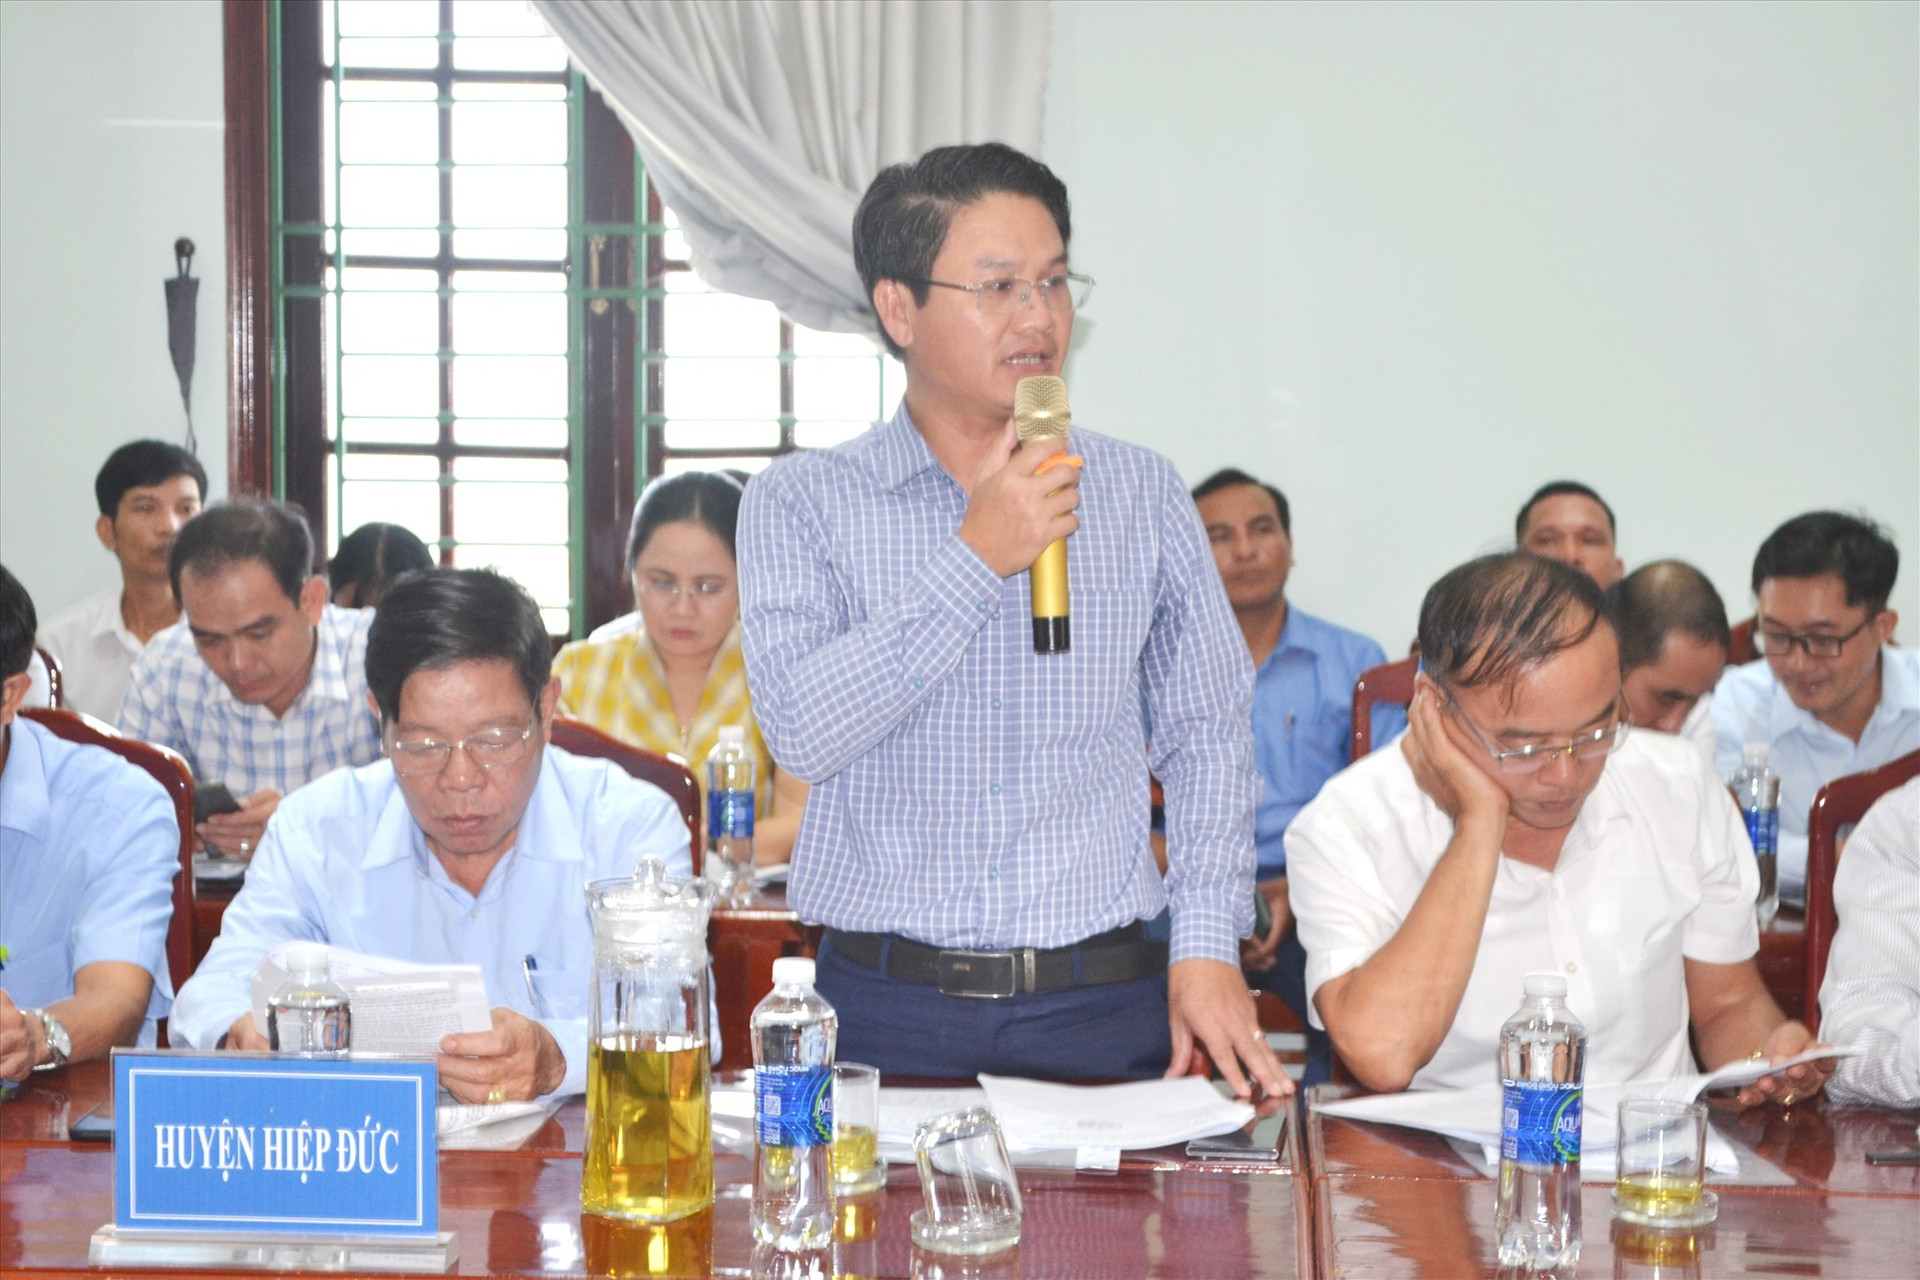 Chủ tịch UBND huyện Hiệp Đức - ông Nguyễn Văn Nam kiến nghị tháo gỡ ách tắc GPMB liên quan đến đất cao su. Ảnh: C.T